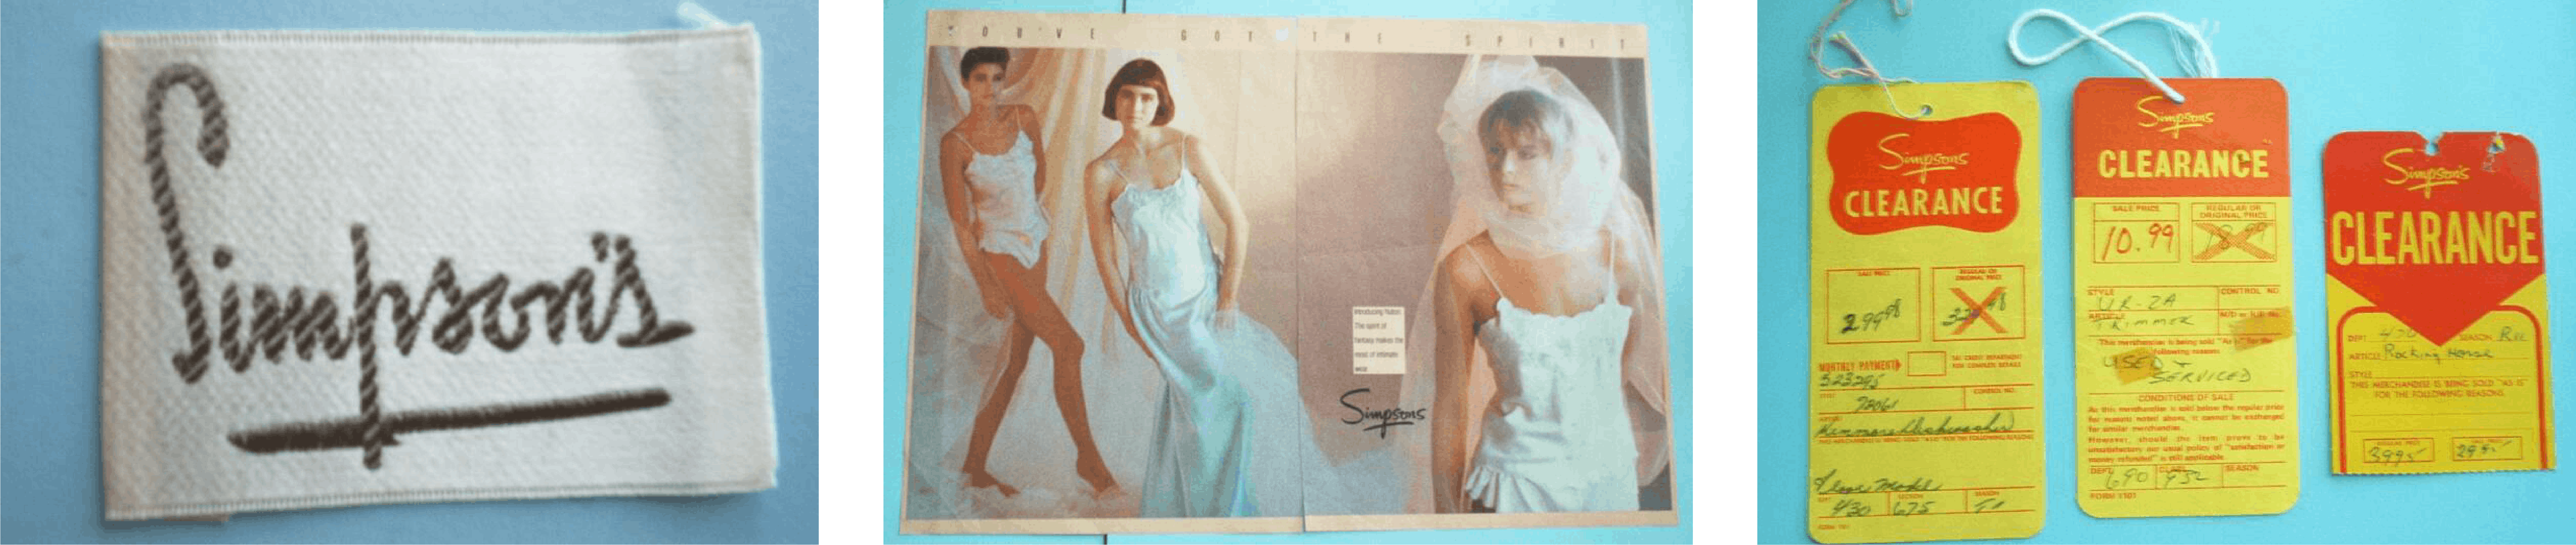  Archiefbeelden van een Simpson&#039;s-label, een lingerieadvertentie en soldenlabels